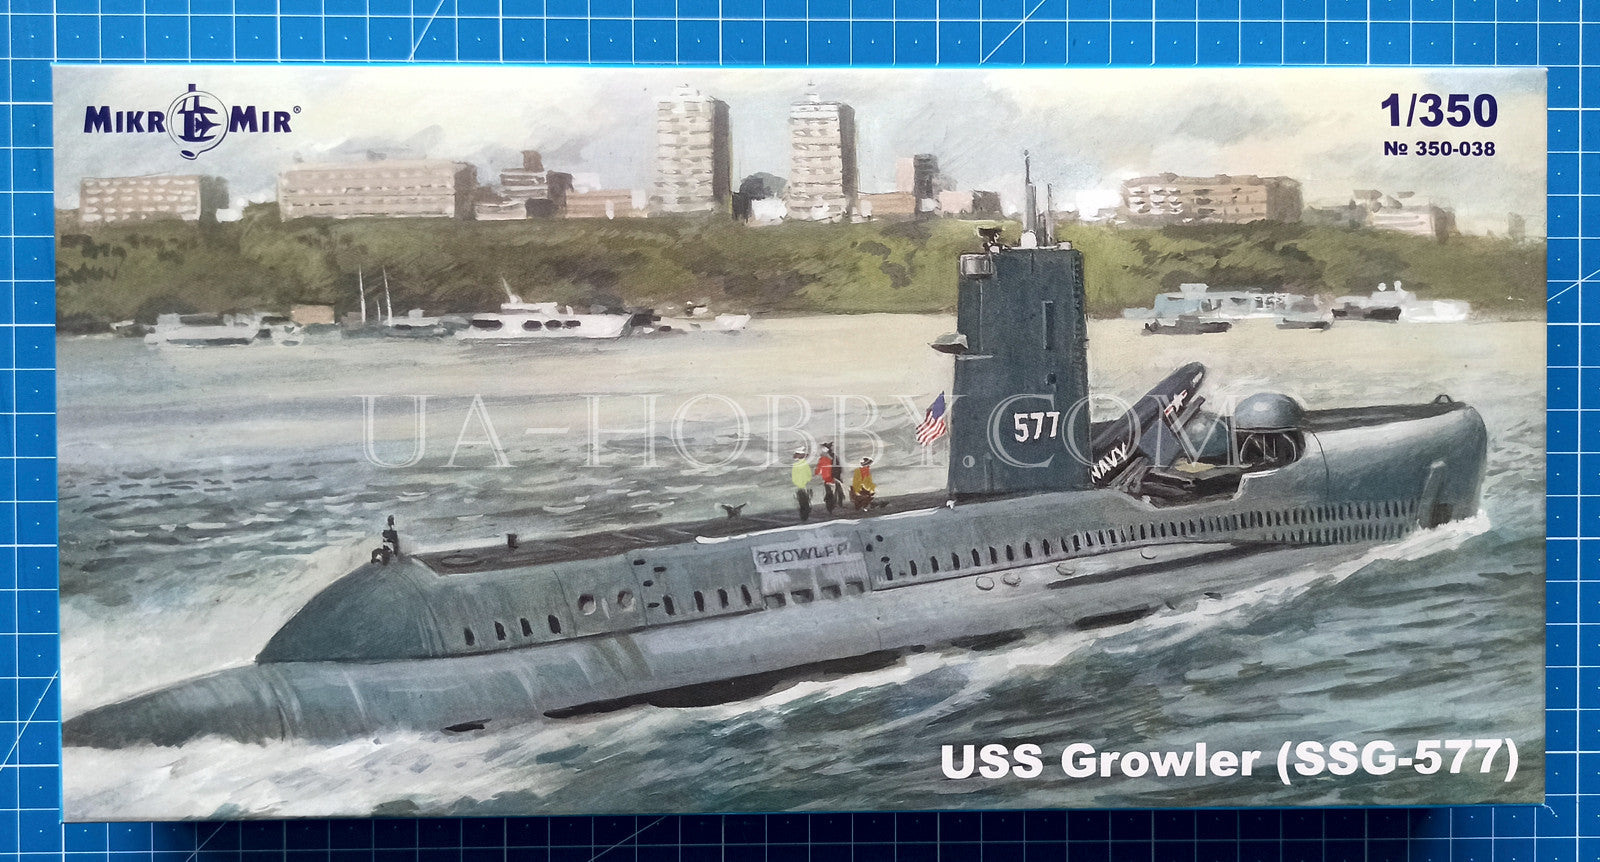 1/350 USS Growler SSG-577. MikroMir 350-038